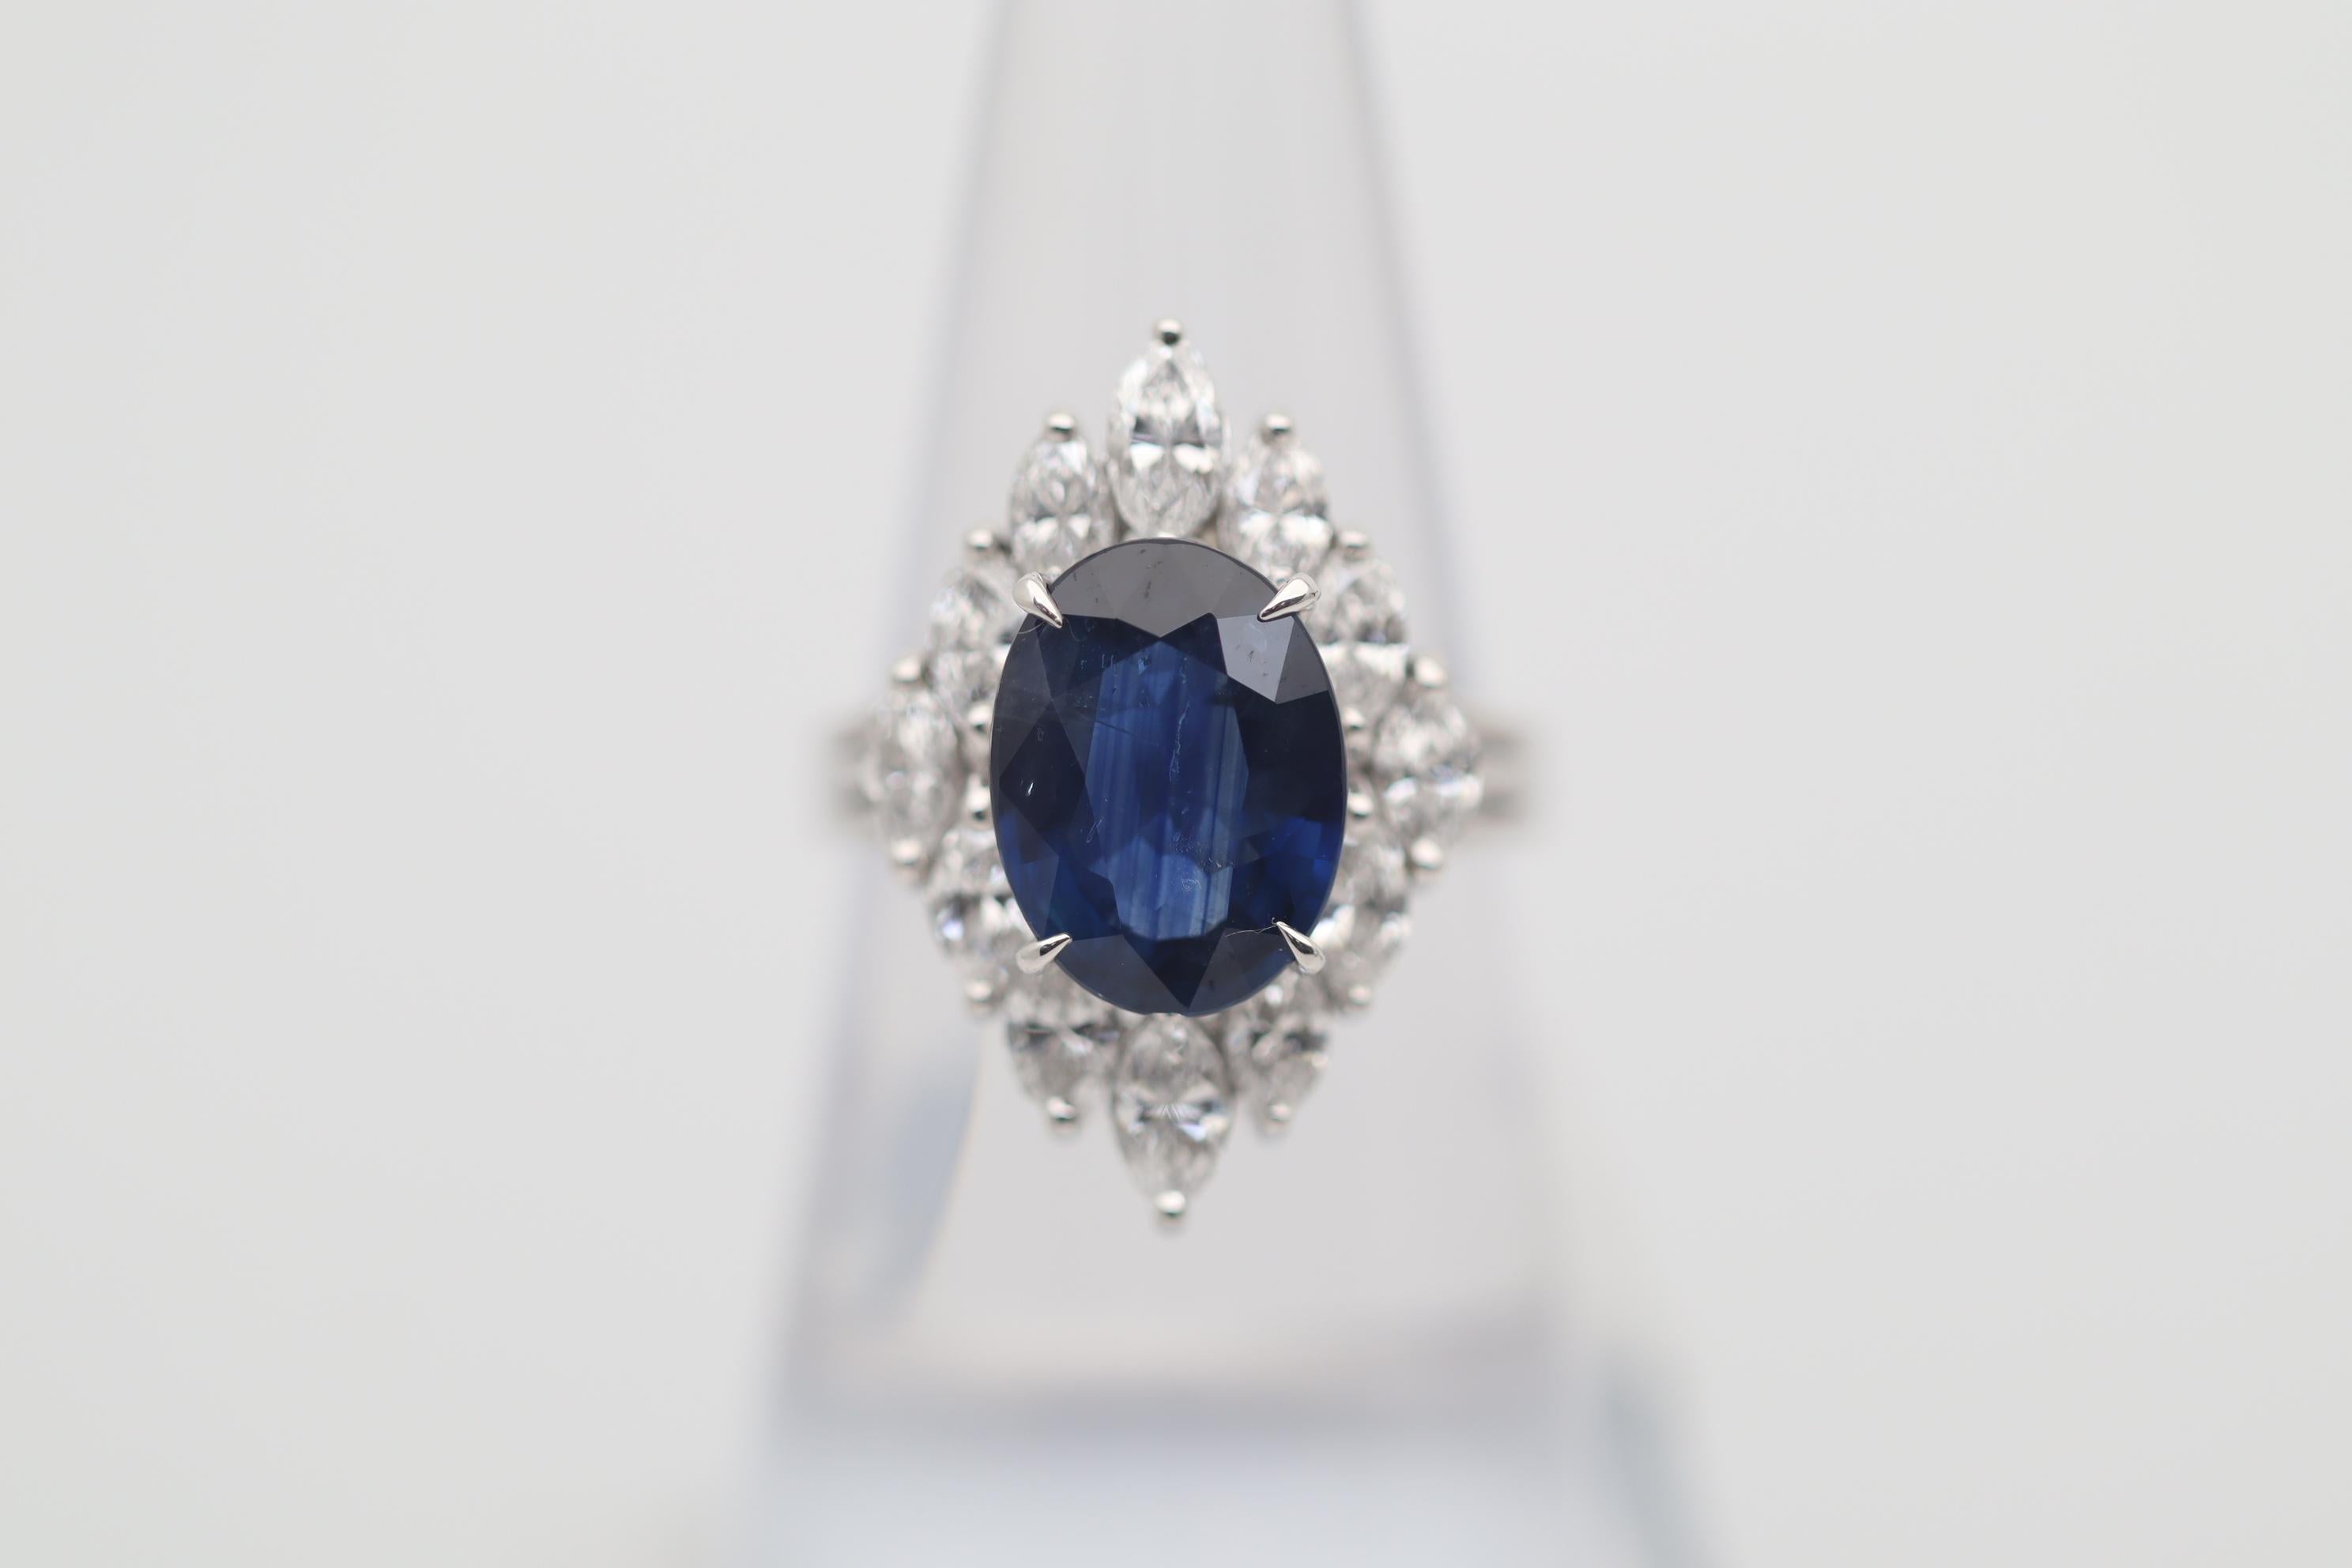 Une bague amusante, élégante et chic avec un saphir bleu naturel de 4,77 carats ! Elle a une jolie forme ovale et une riche couleur bleue. Elle est rehaussée par 1,68 carat de gros diamants de forme marquise qui sont sertis autour du saphir, donnant